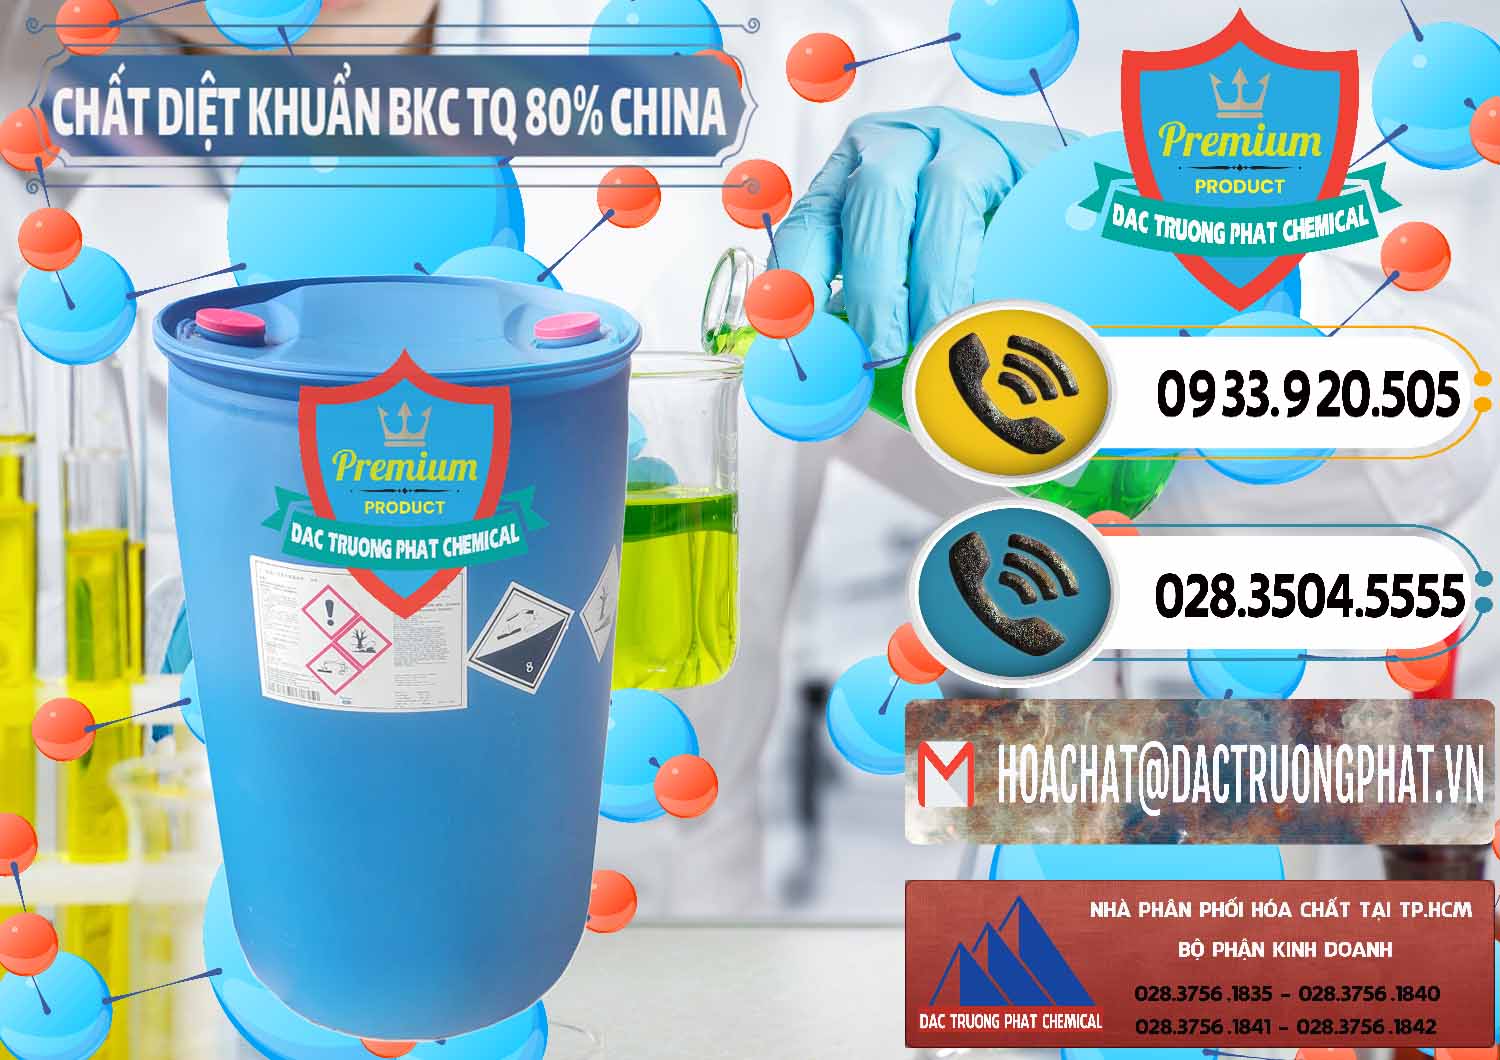 Đơn vị chuyên nhập khẩu _ bán BKC - Benzalkonium Chloride 80% Trung Quốc China - 0310 - Cty phân phối - nhập khẩu hóa chất tại TP.HCM - hoachatdetnhuom.vn